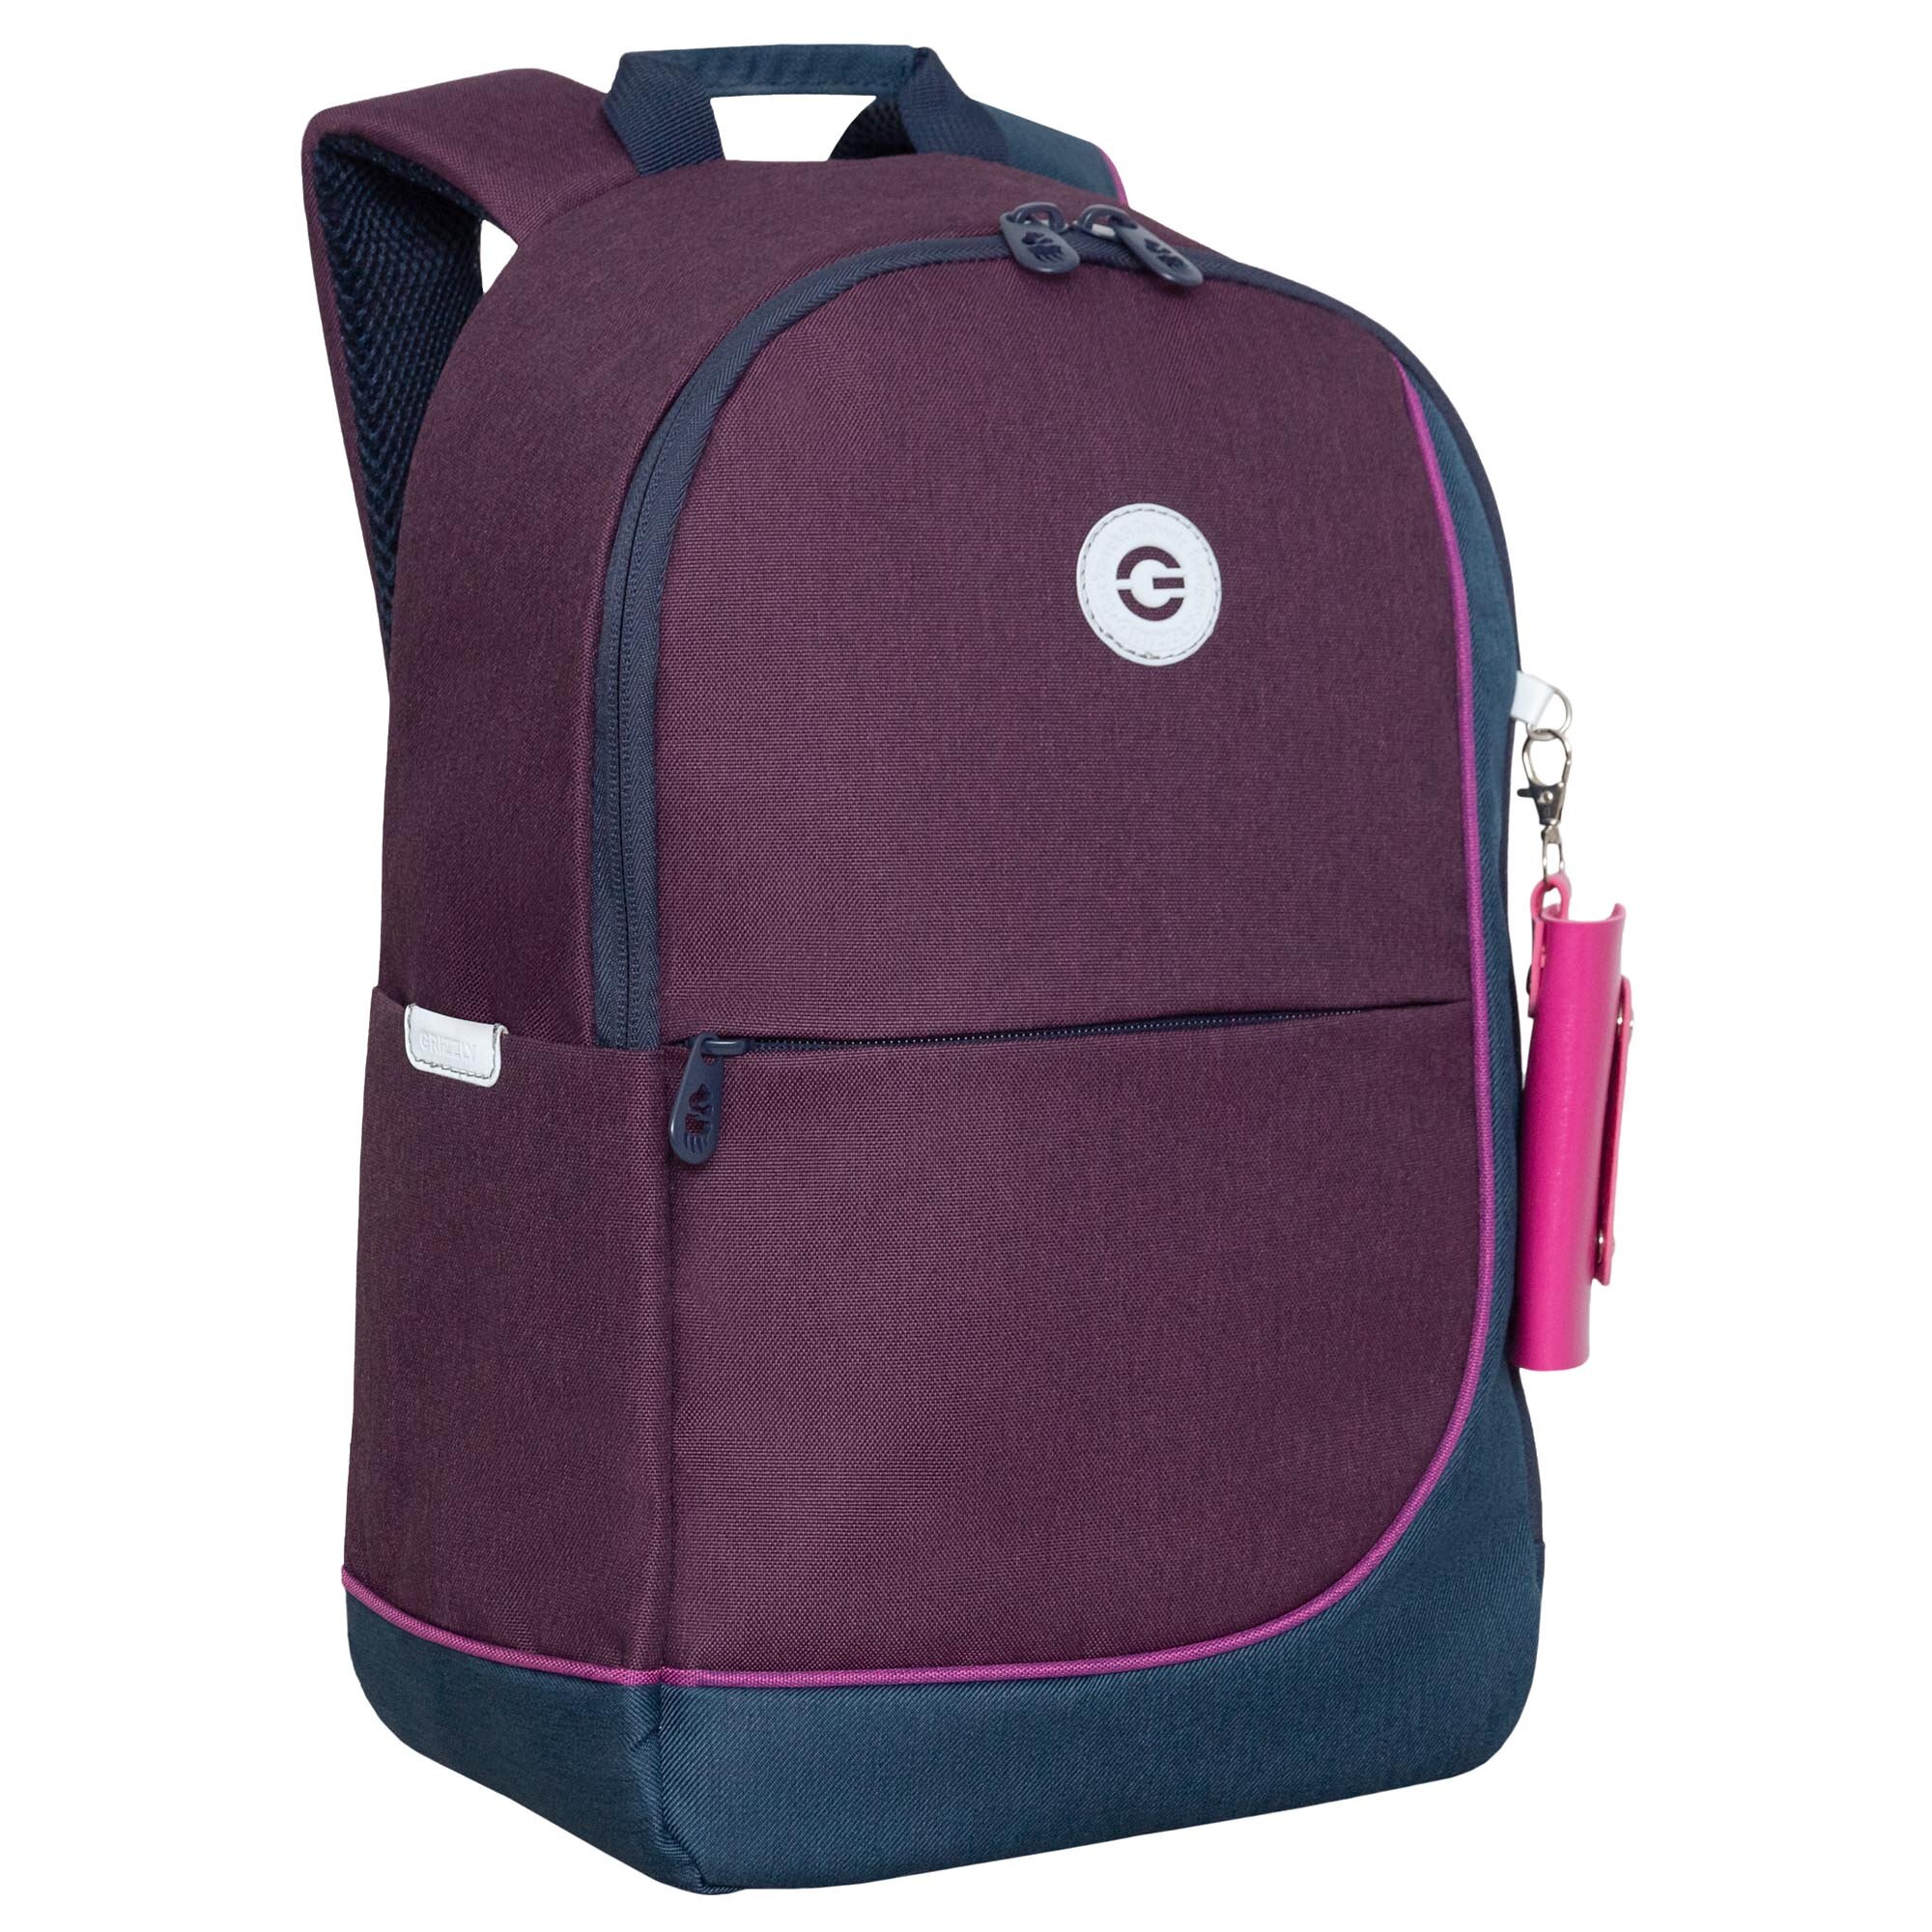 Стильный школьный рюкзак GRIZZLY с карманом для ноутбука 13", женский RD-345-2/4